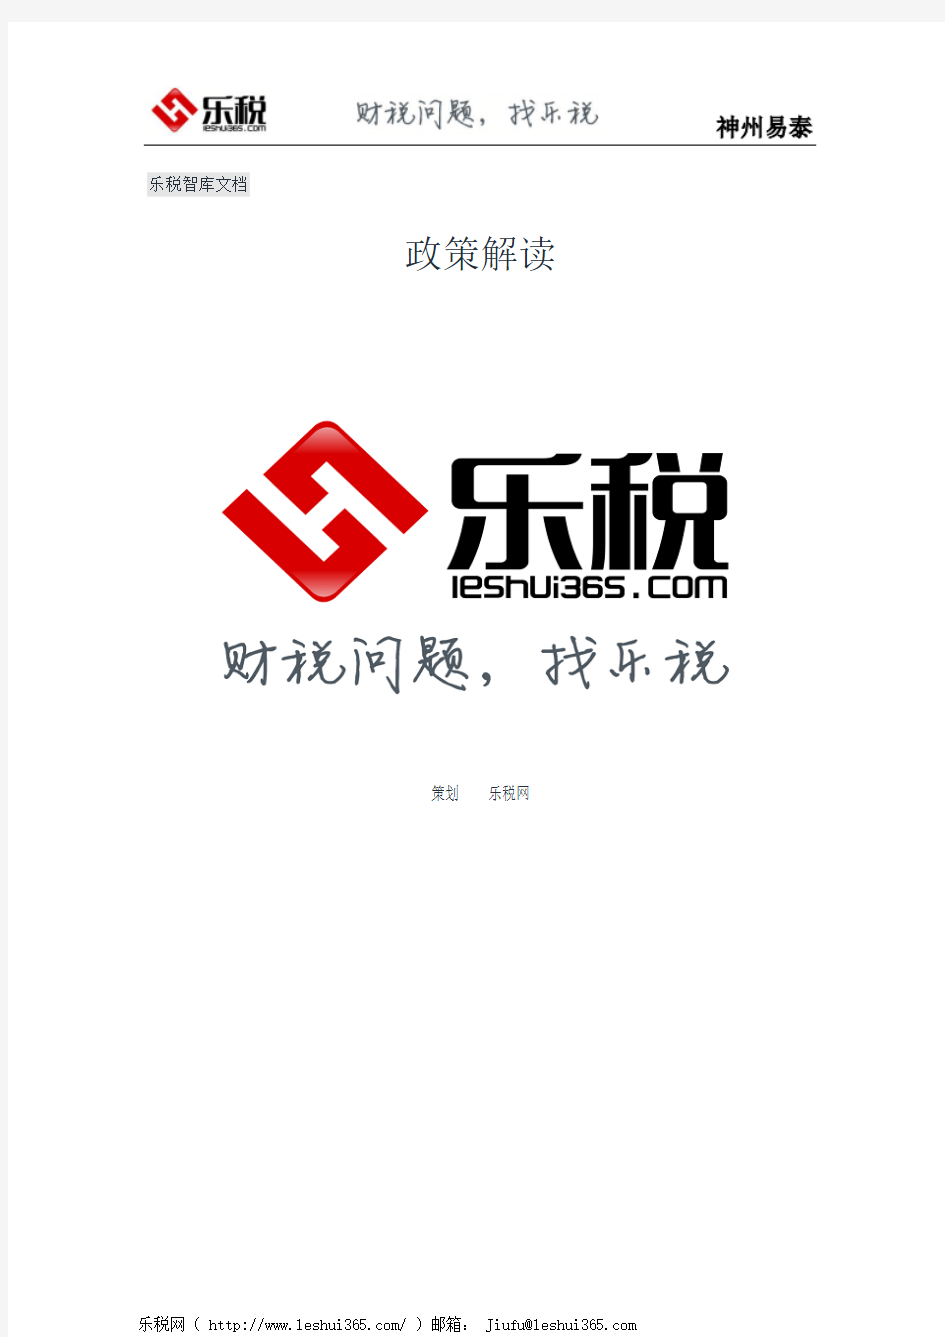 关于《北京市地方税务局关于公布税务行政许可事项目录的公告》的解读